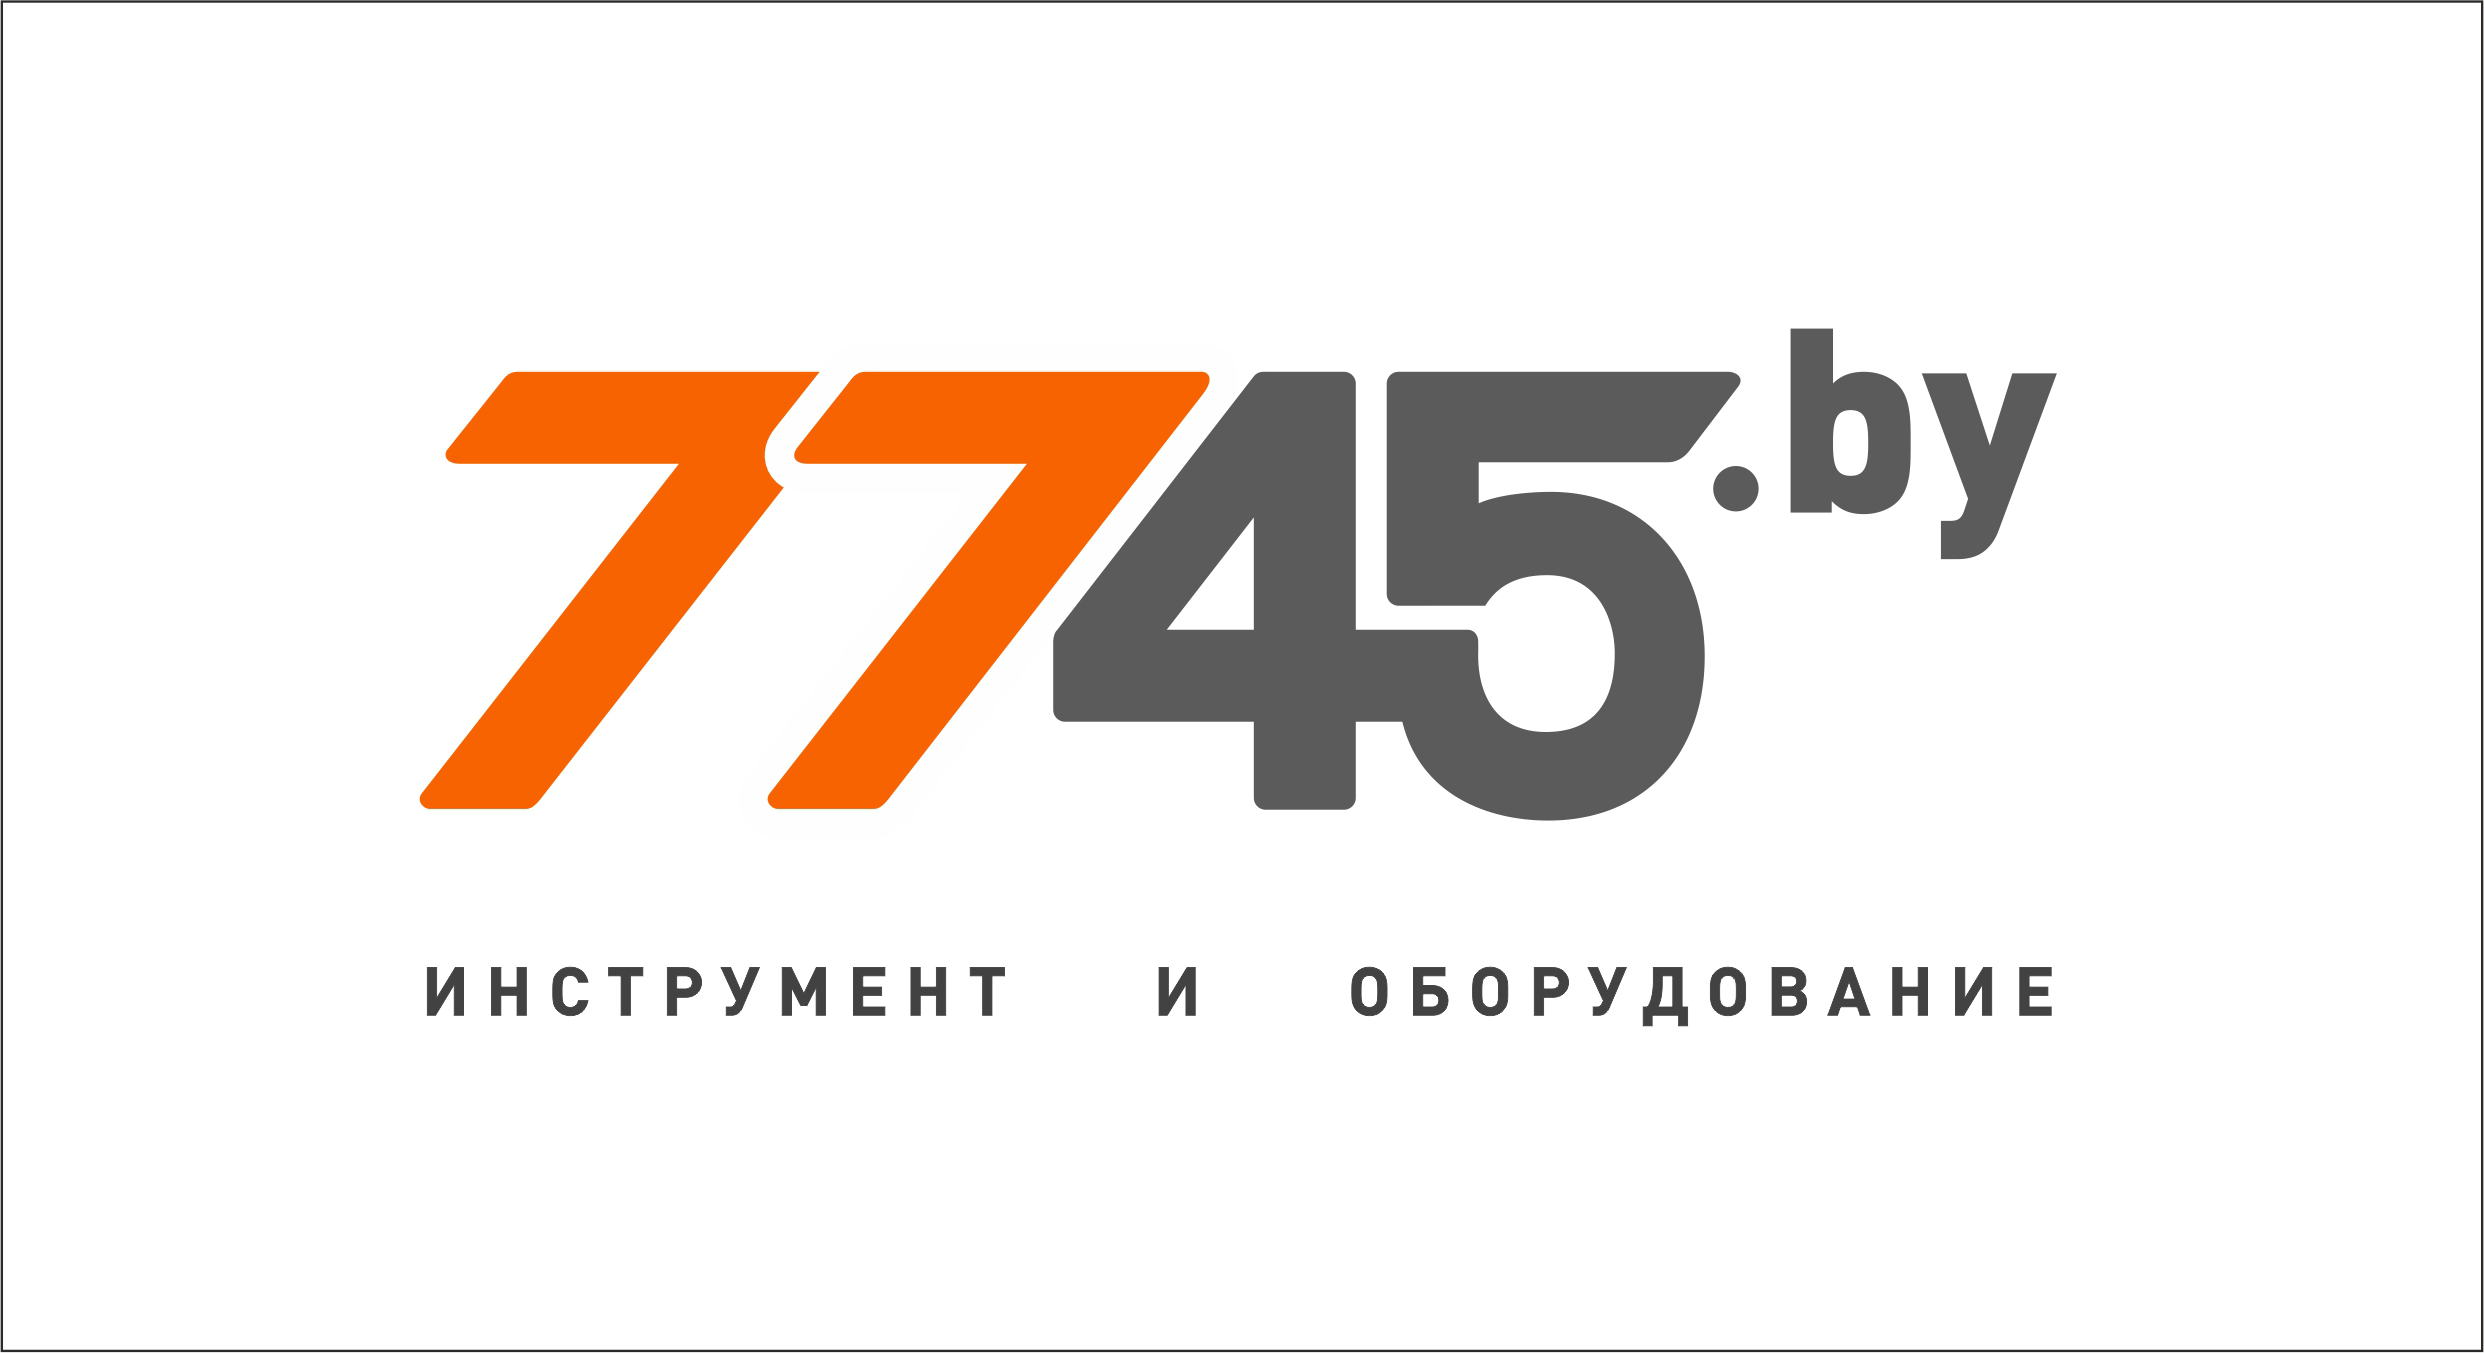 7745 Бу Интернет Магазин Каталог Могилев